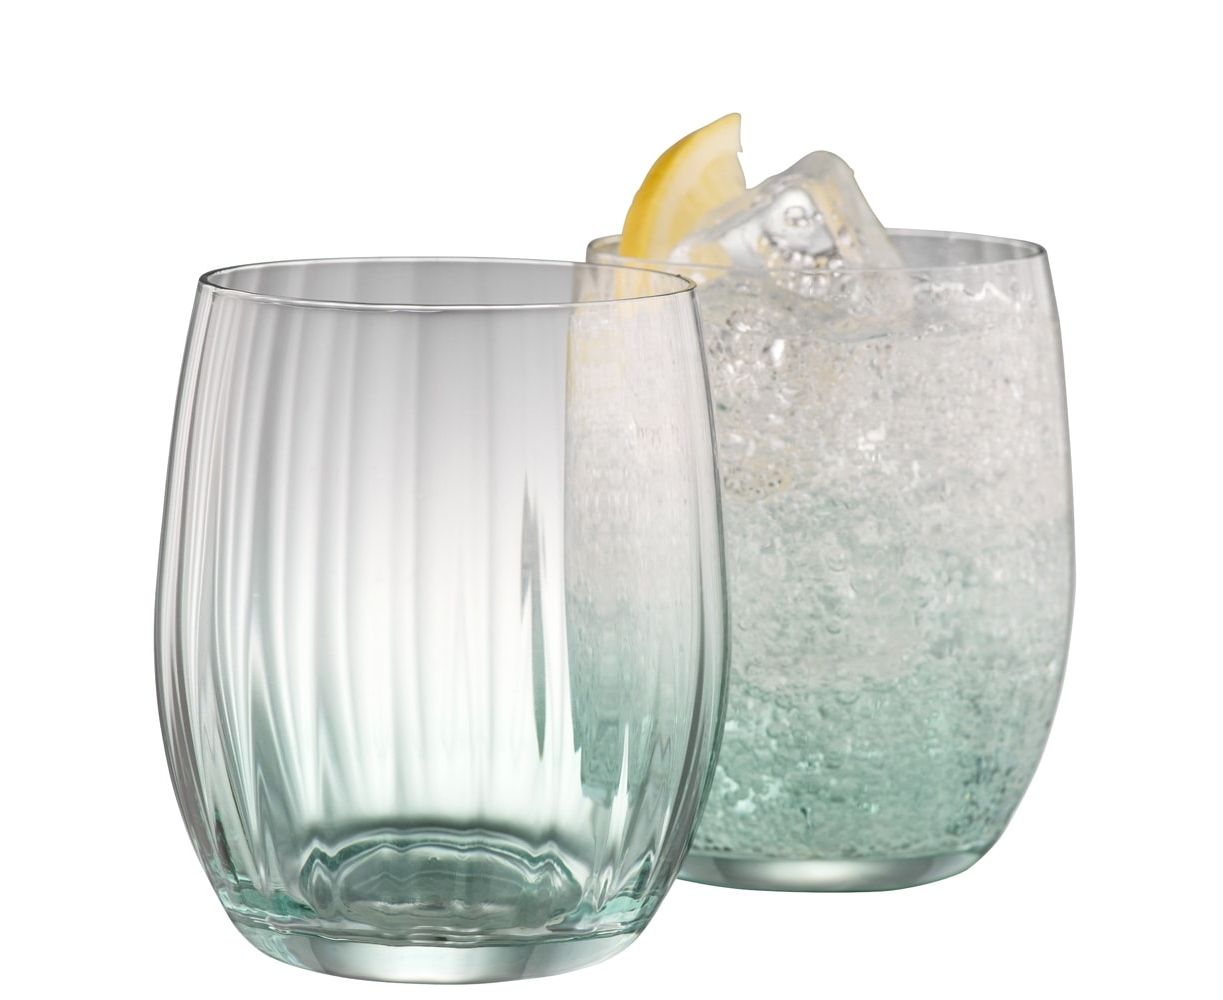 Erne Tumbler Glass Set of 2 - Aqua